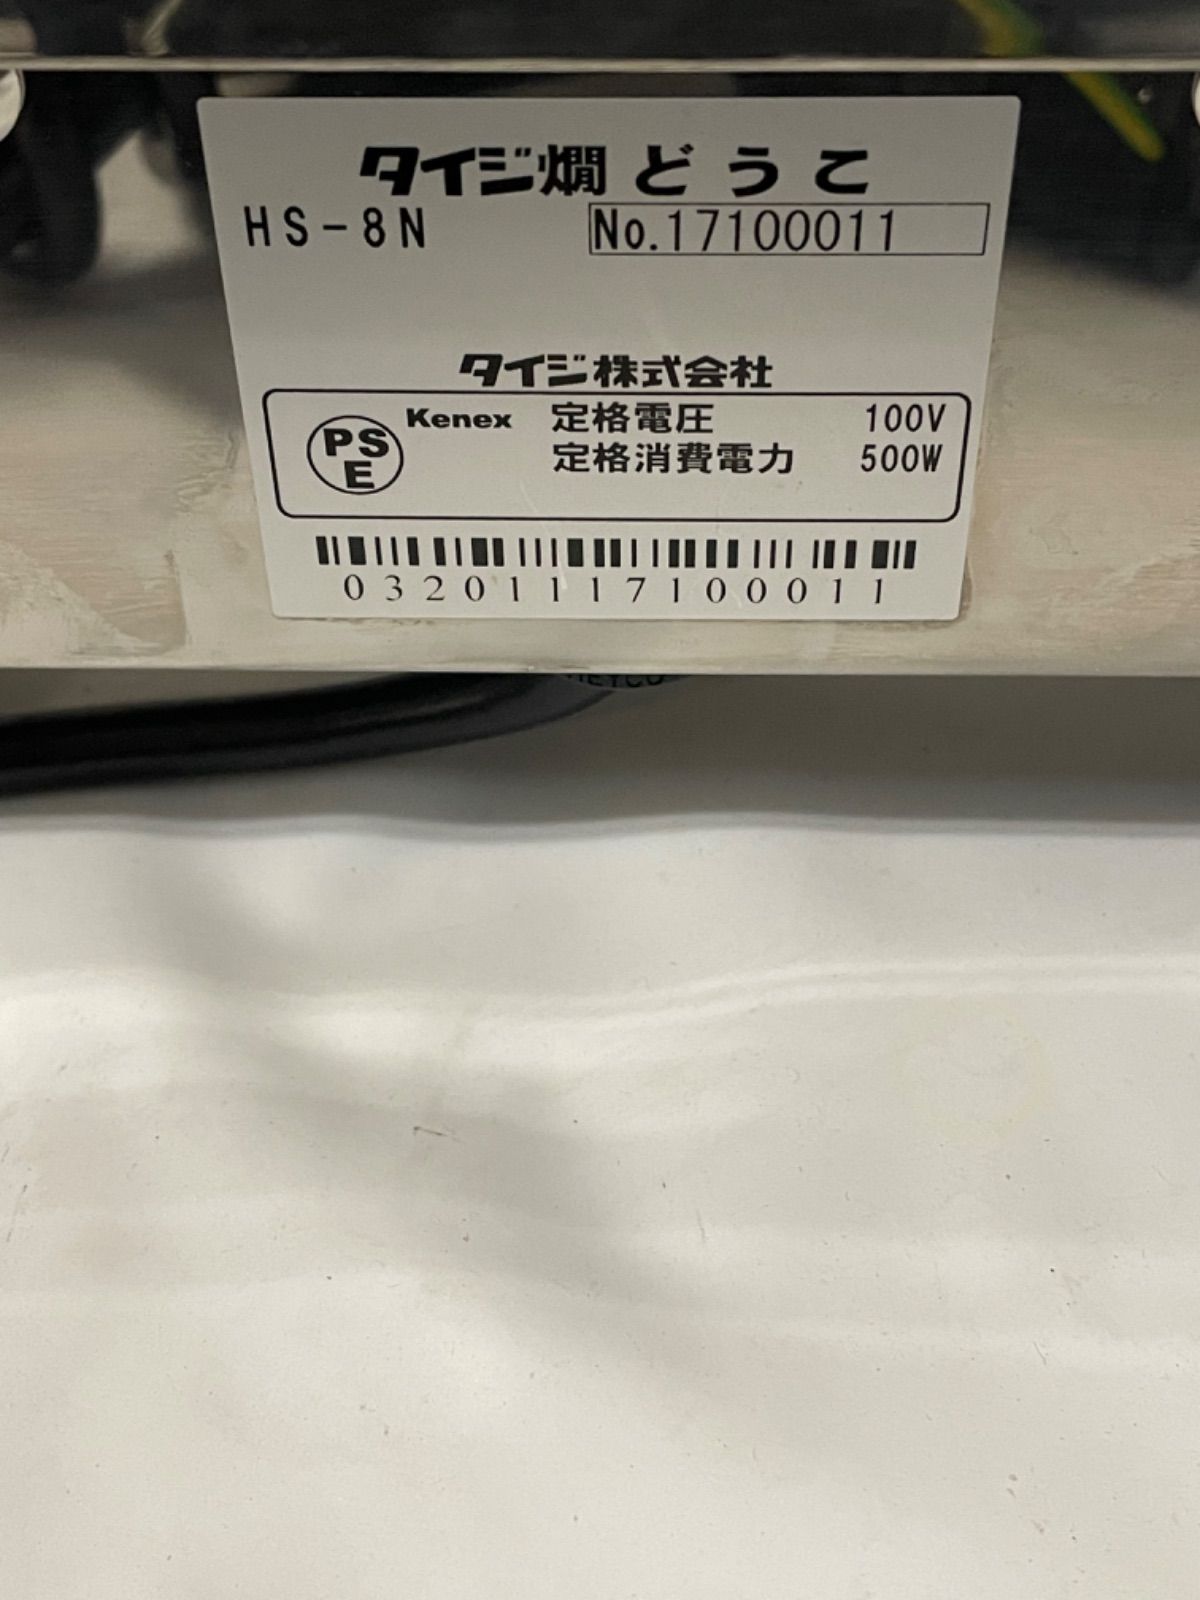 TAIJI タイジ 燗どうこ HS-8N 酒燗器 ステンレス製 業務用 くっくしょっぷ メルカリ